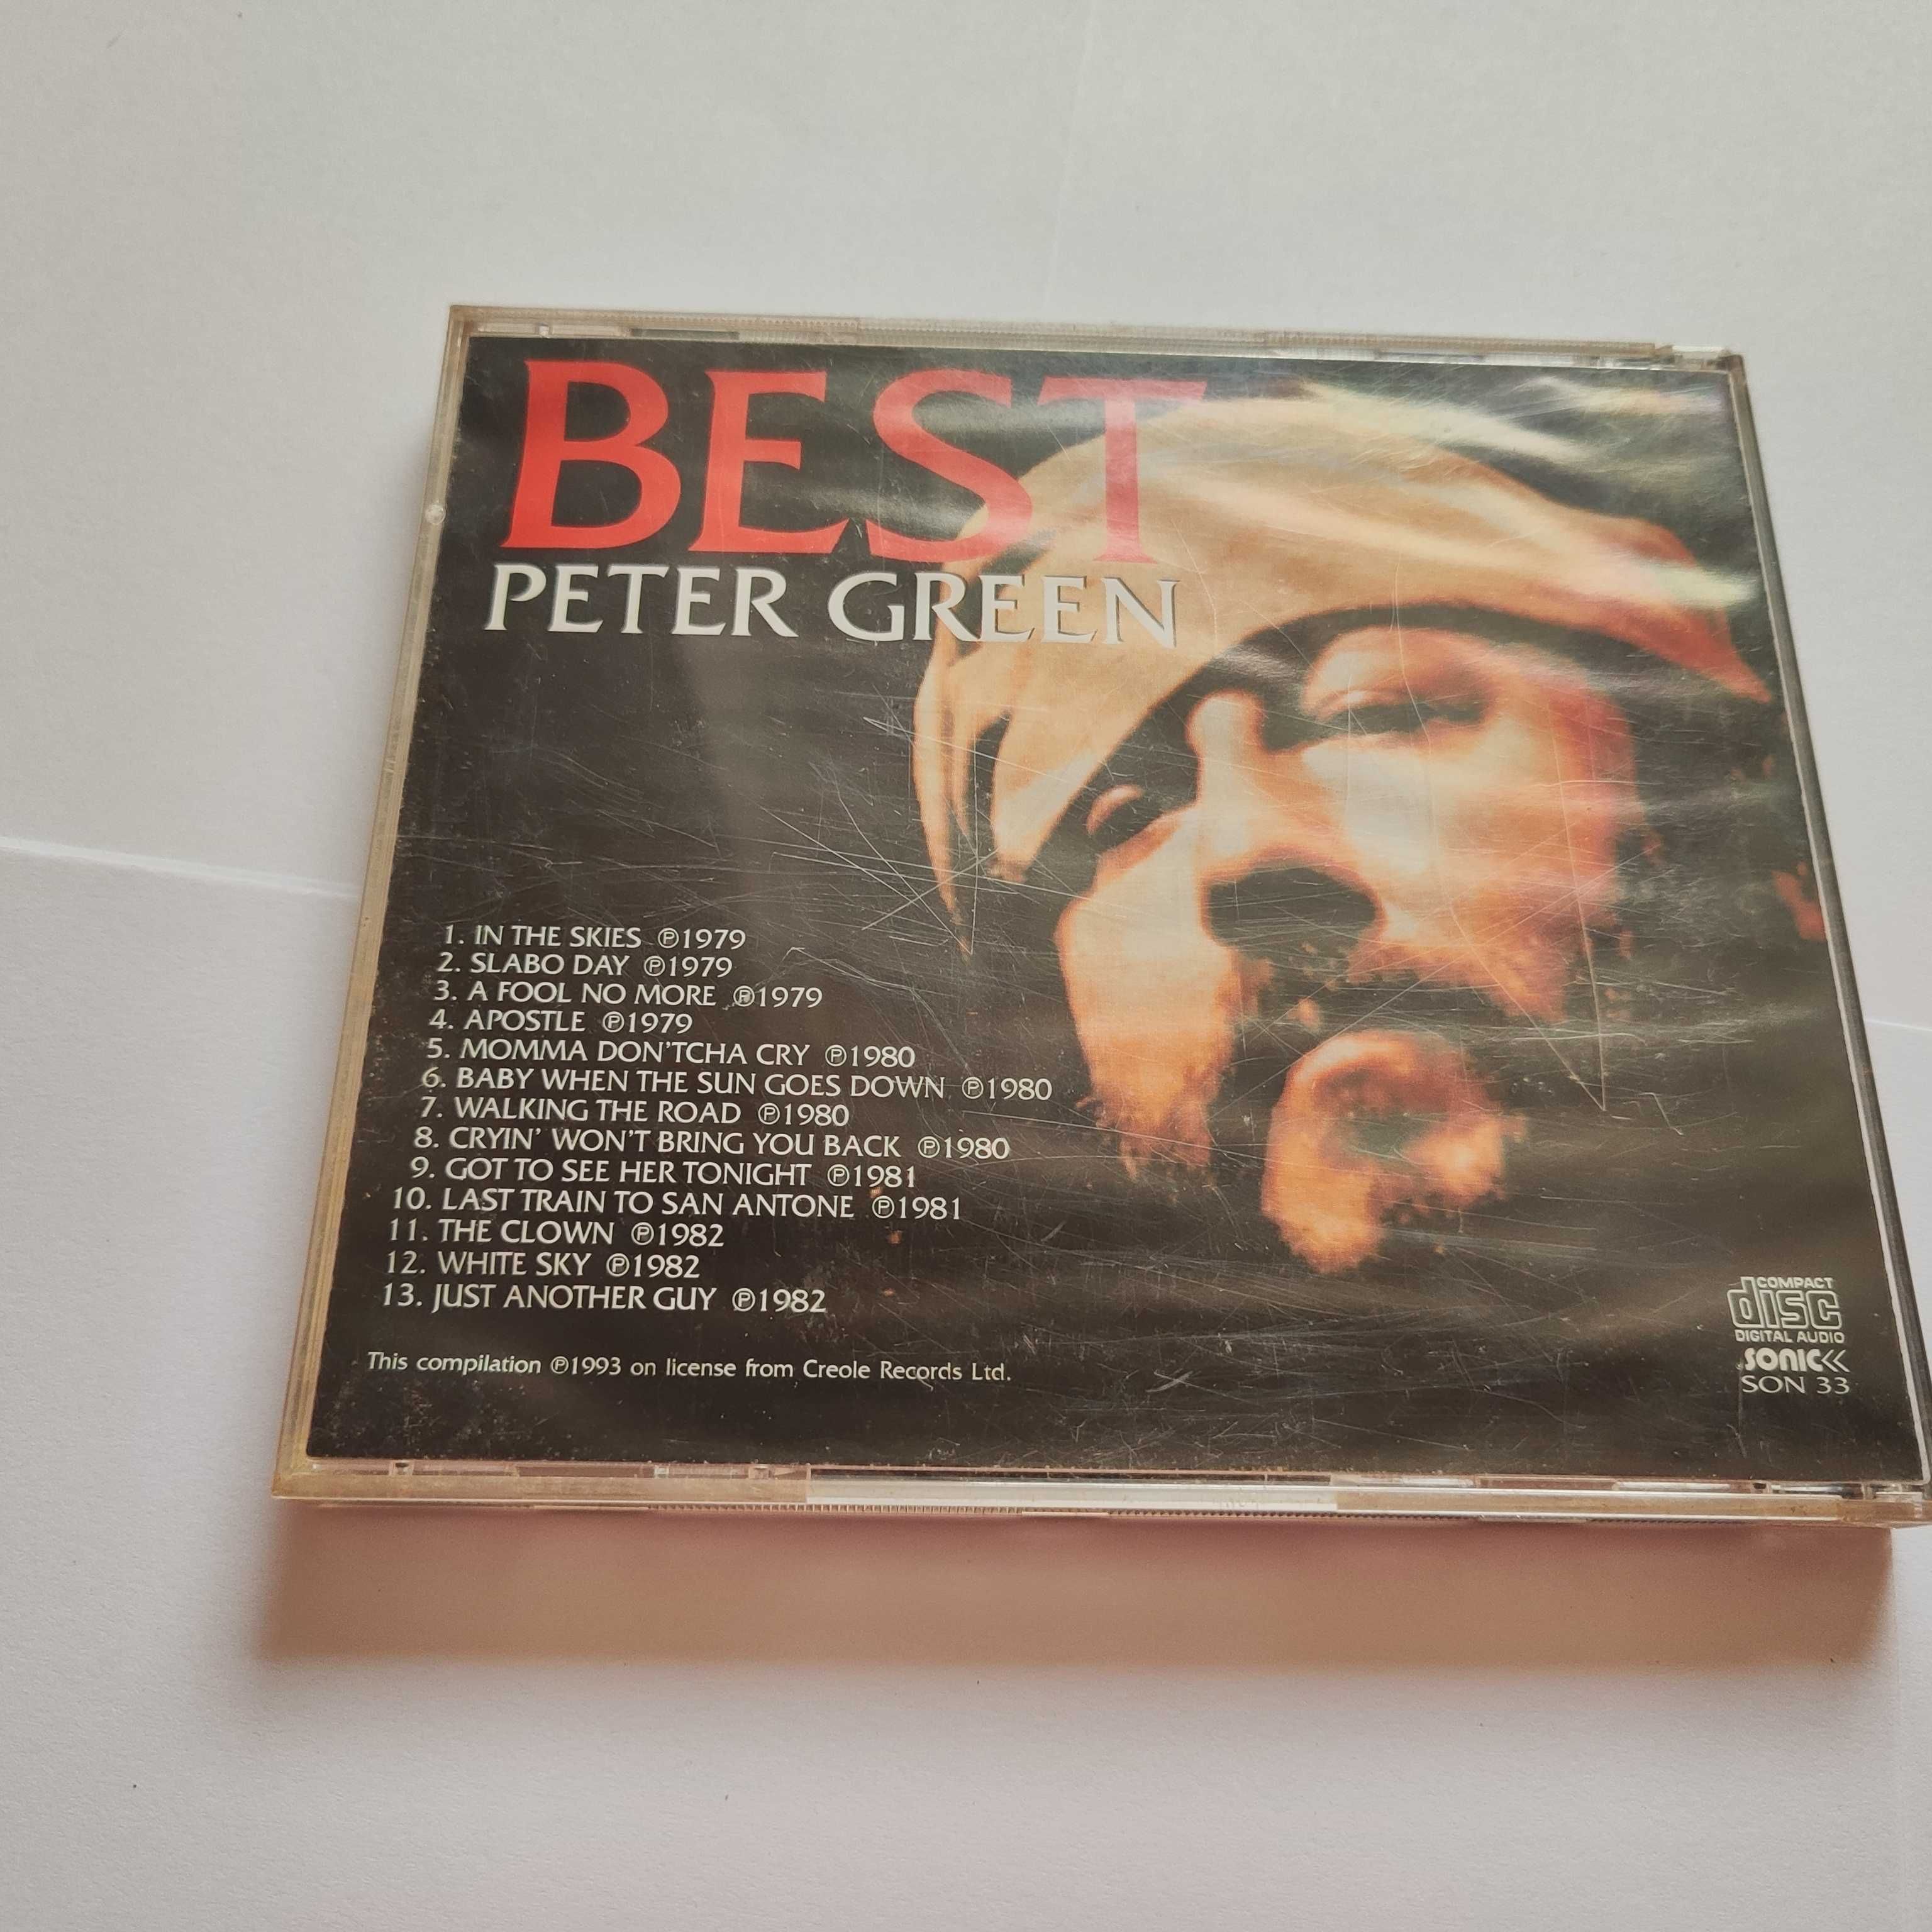 Płyta CD Best Peter Green, wydanie 1993 rok